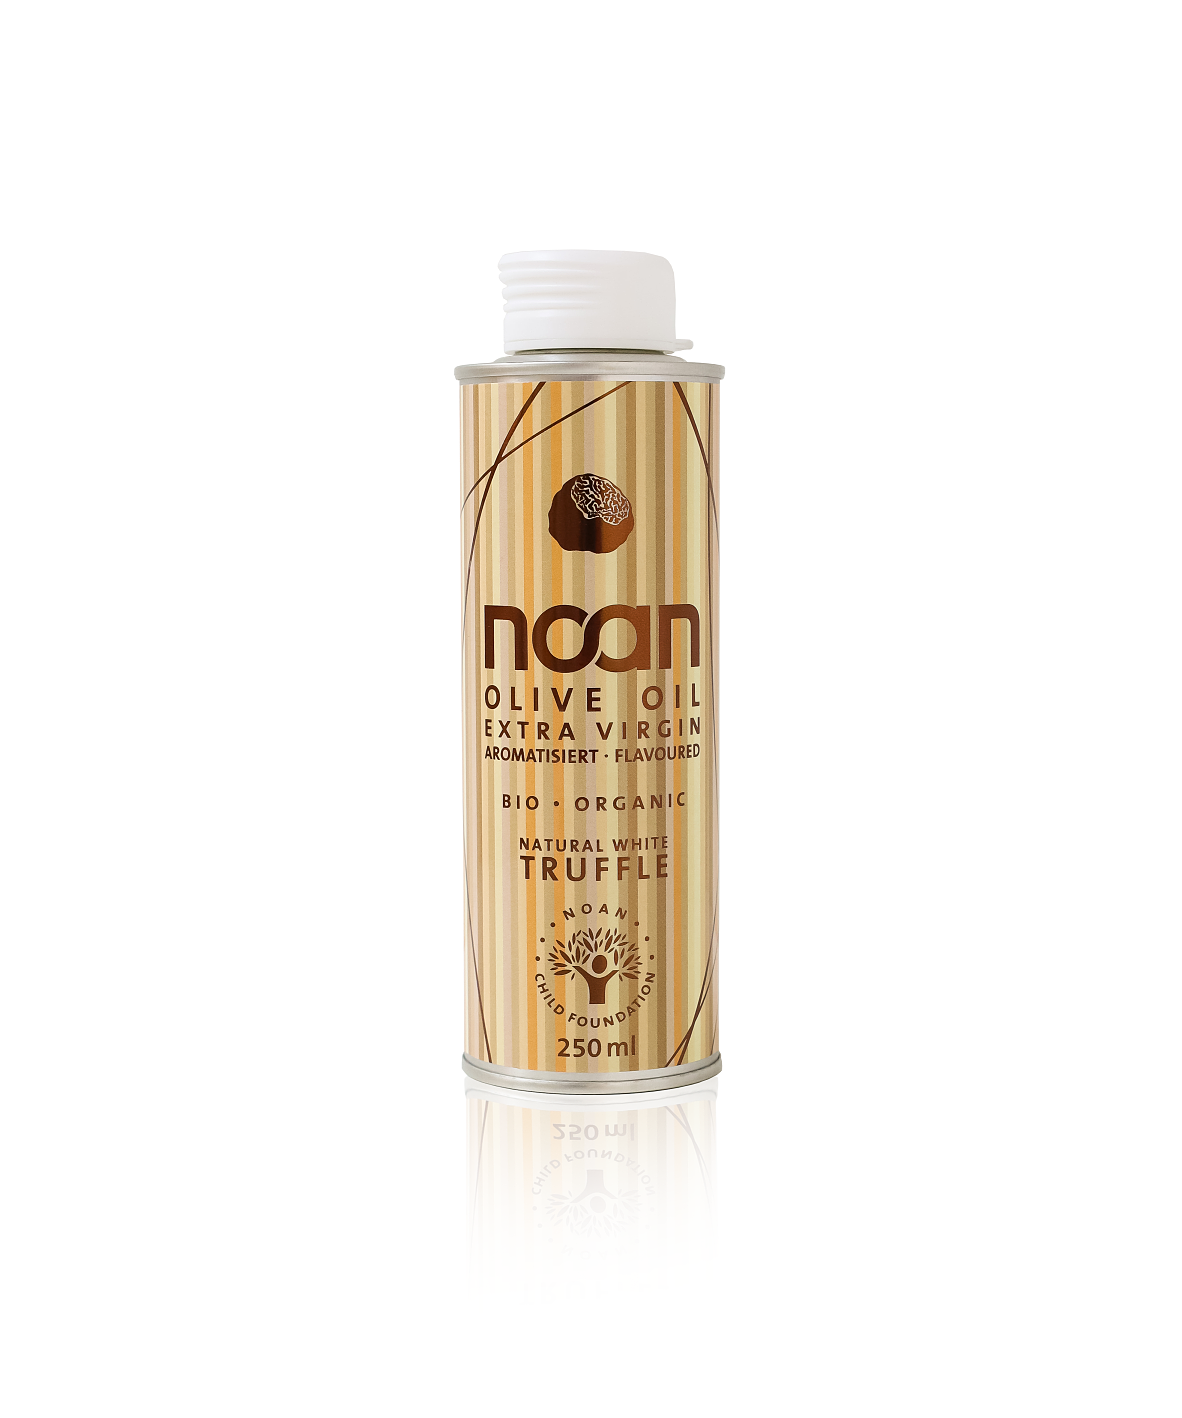 NOAN enthüllt stolz die neueste Ergänzung seiner exquisiten Produktpalette: das NOAN White Truffle Oil. 